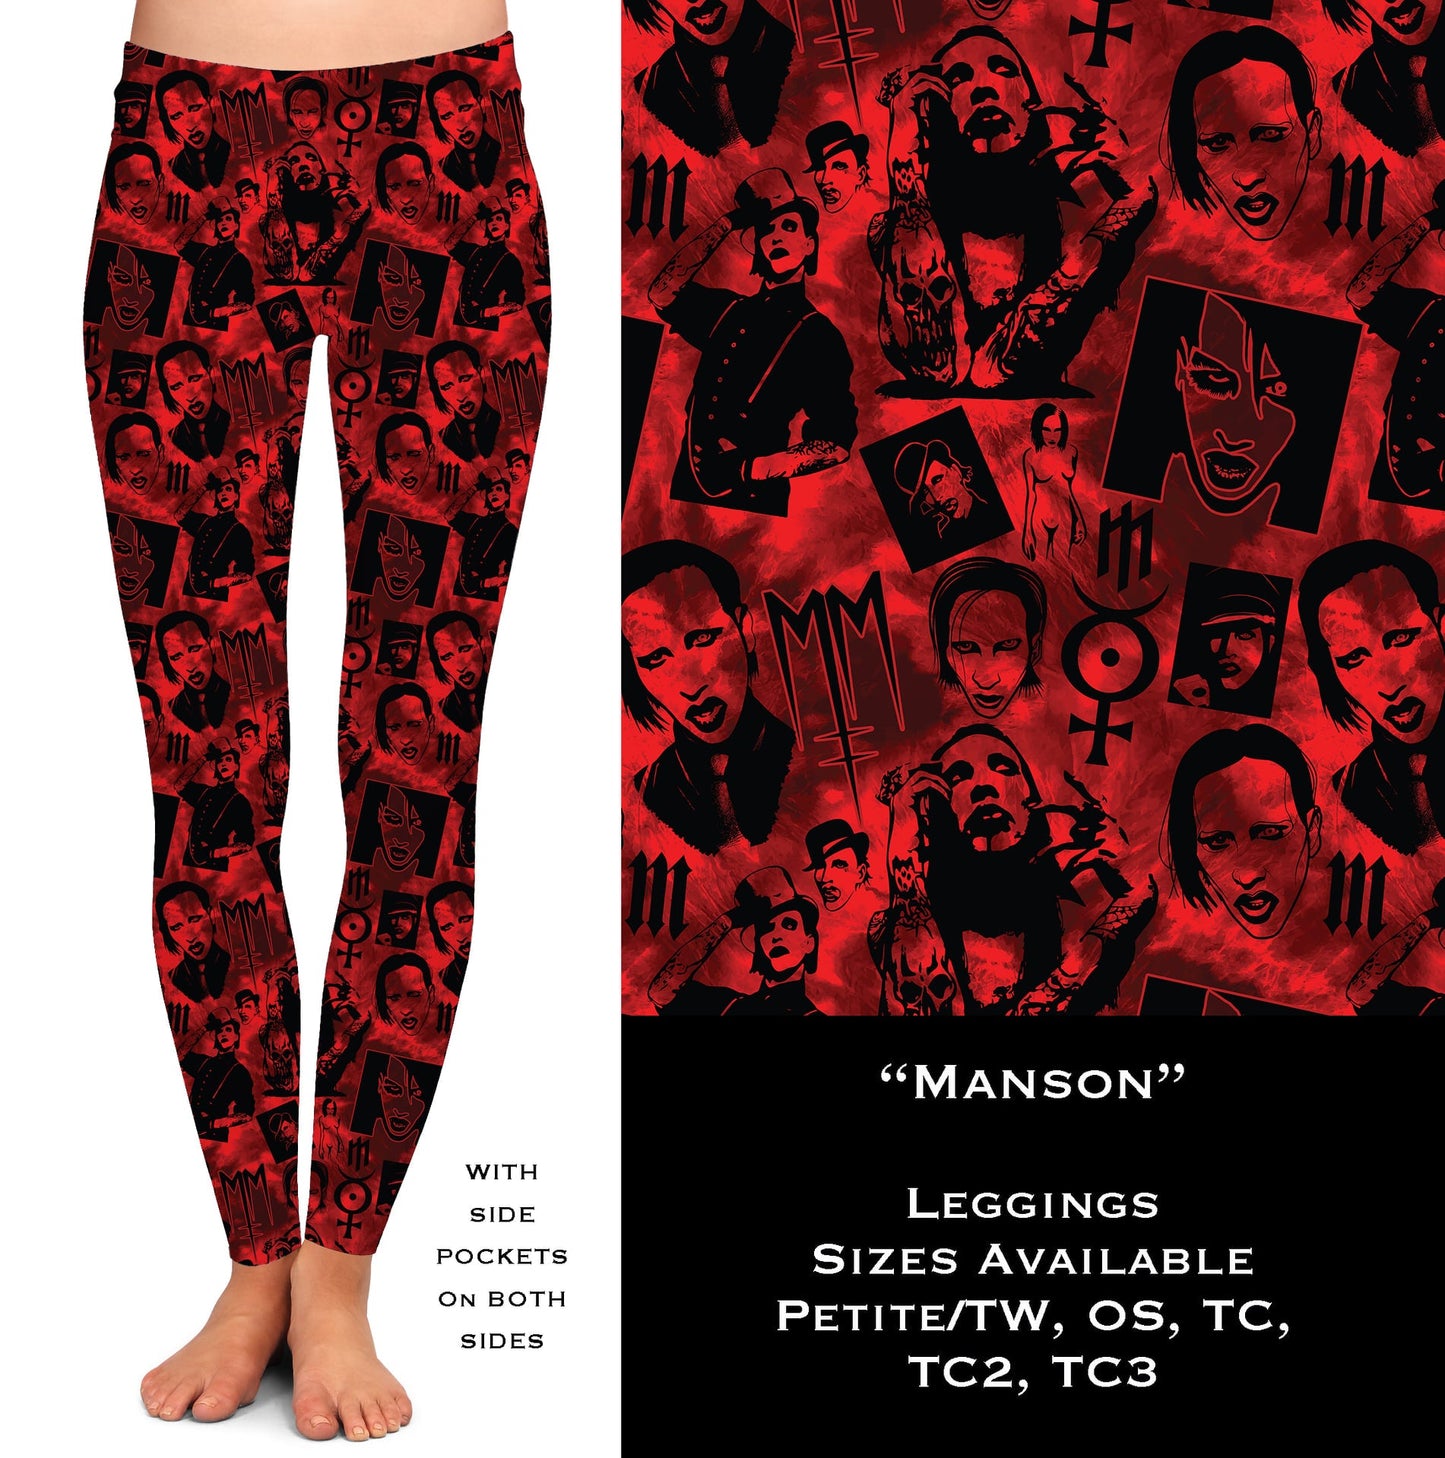 Manson Leggings